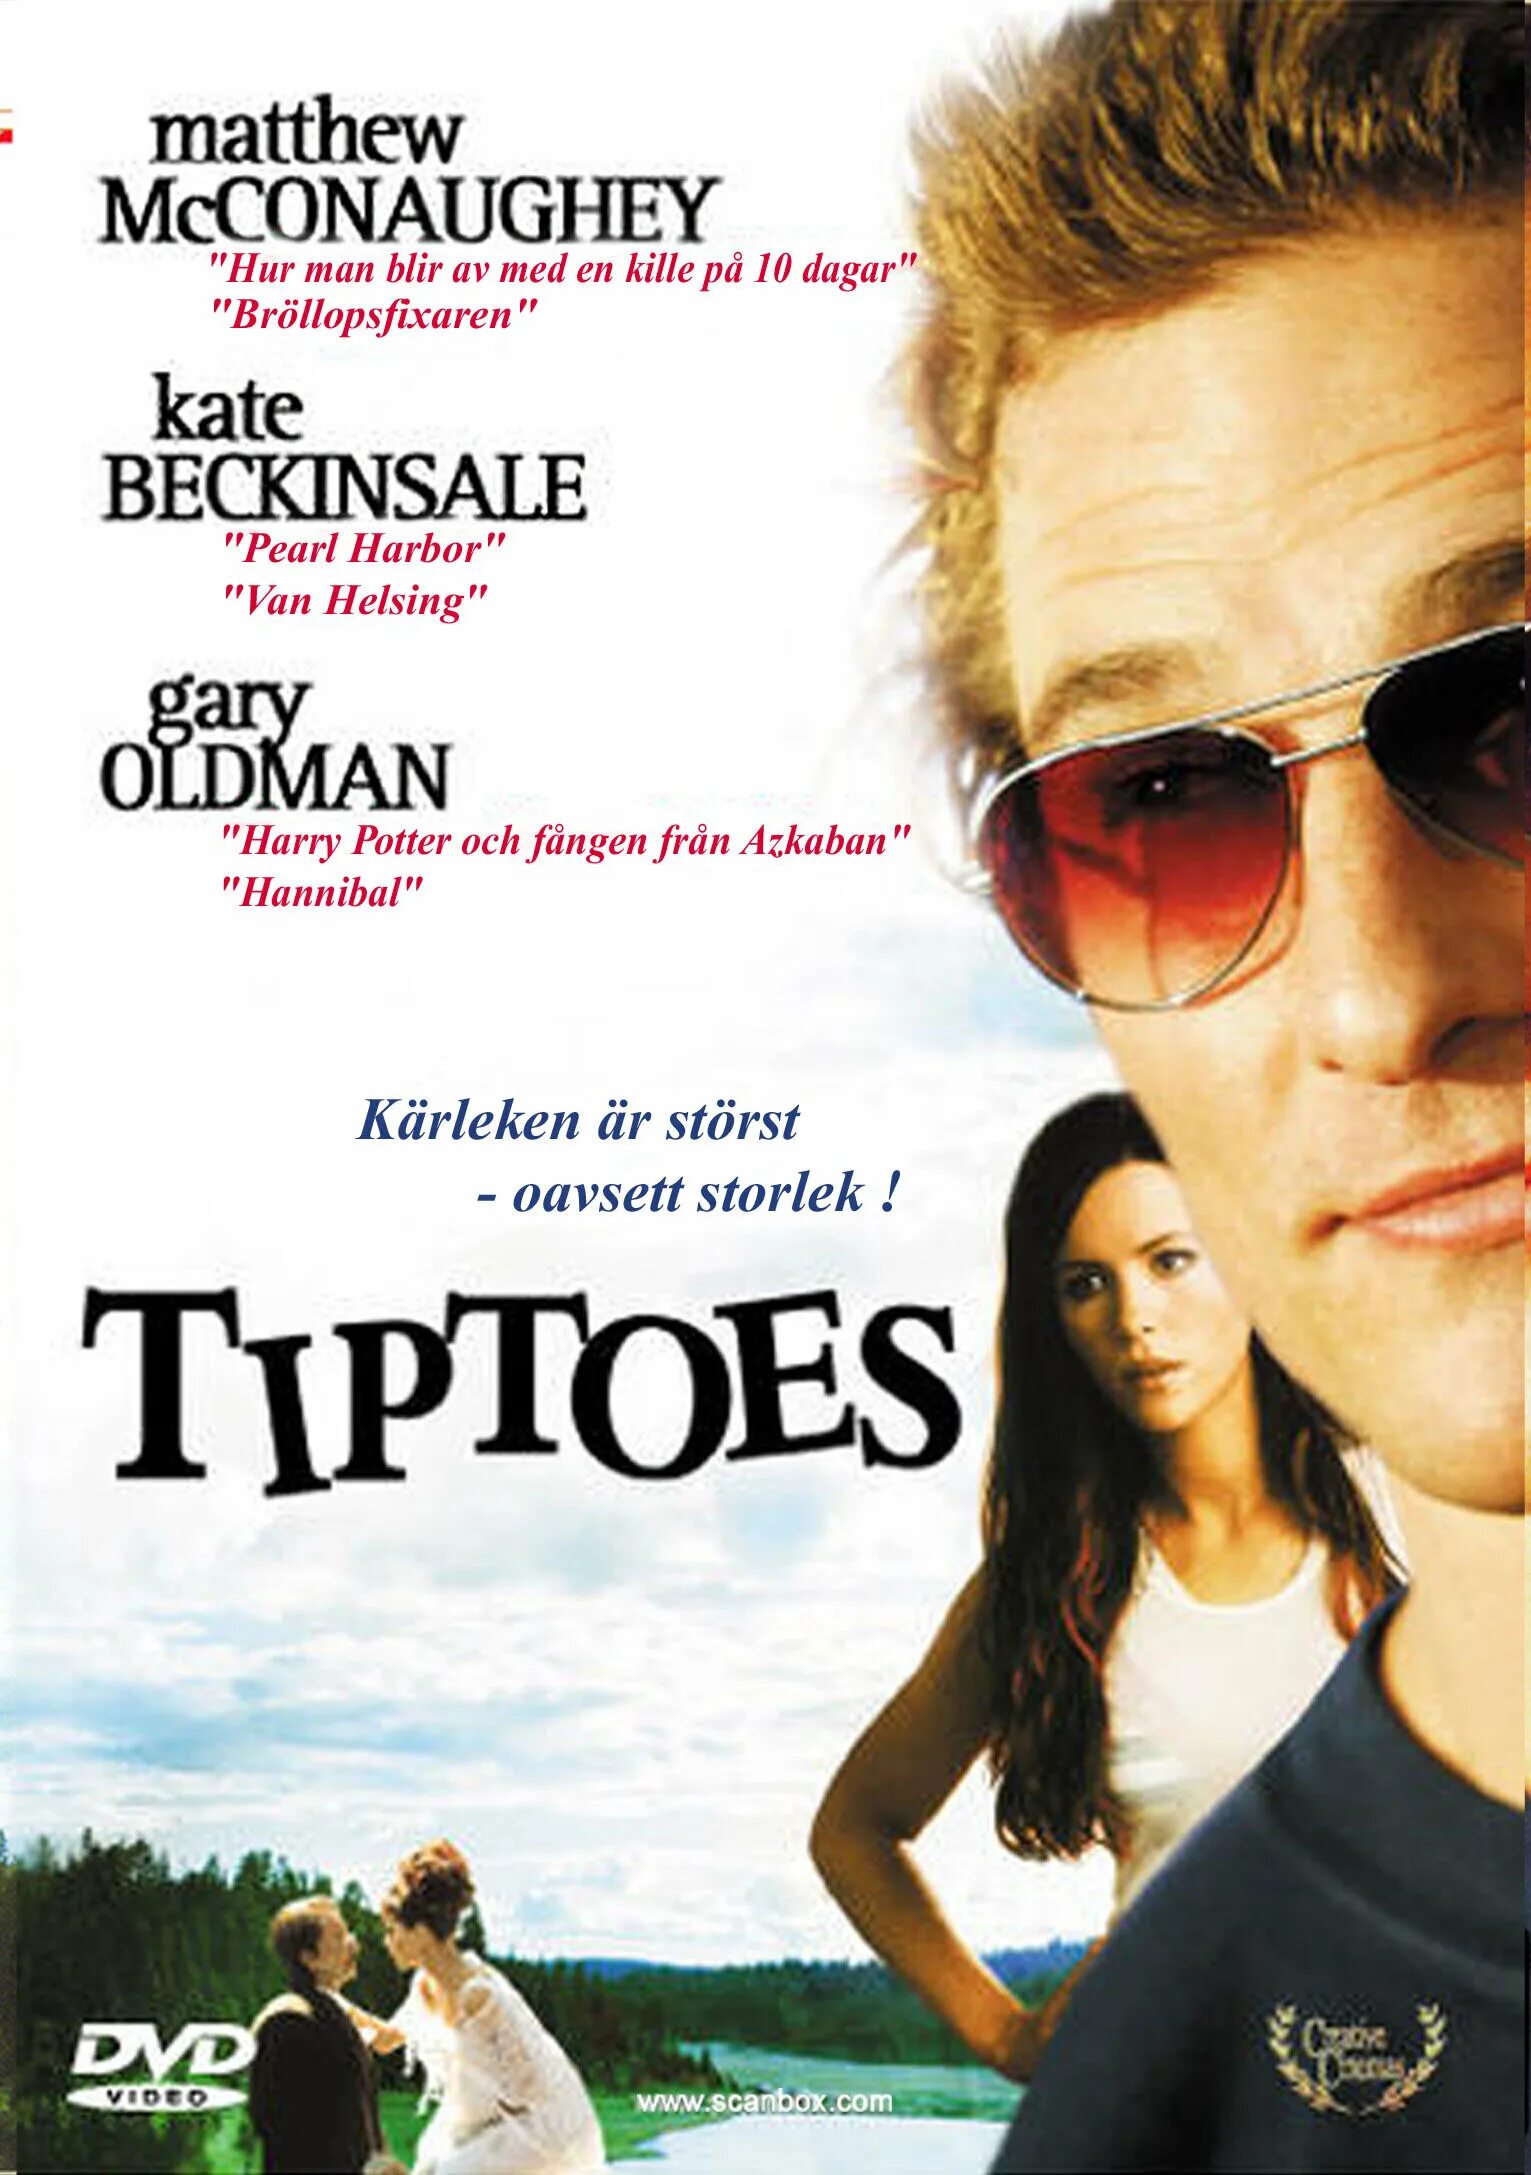 Маленькие пальчики Tiptoes 2003. Маленькие пальчики 2003 Постер. Маленькие пальчики 2003